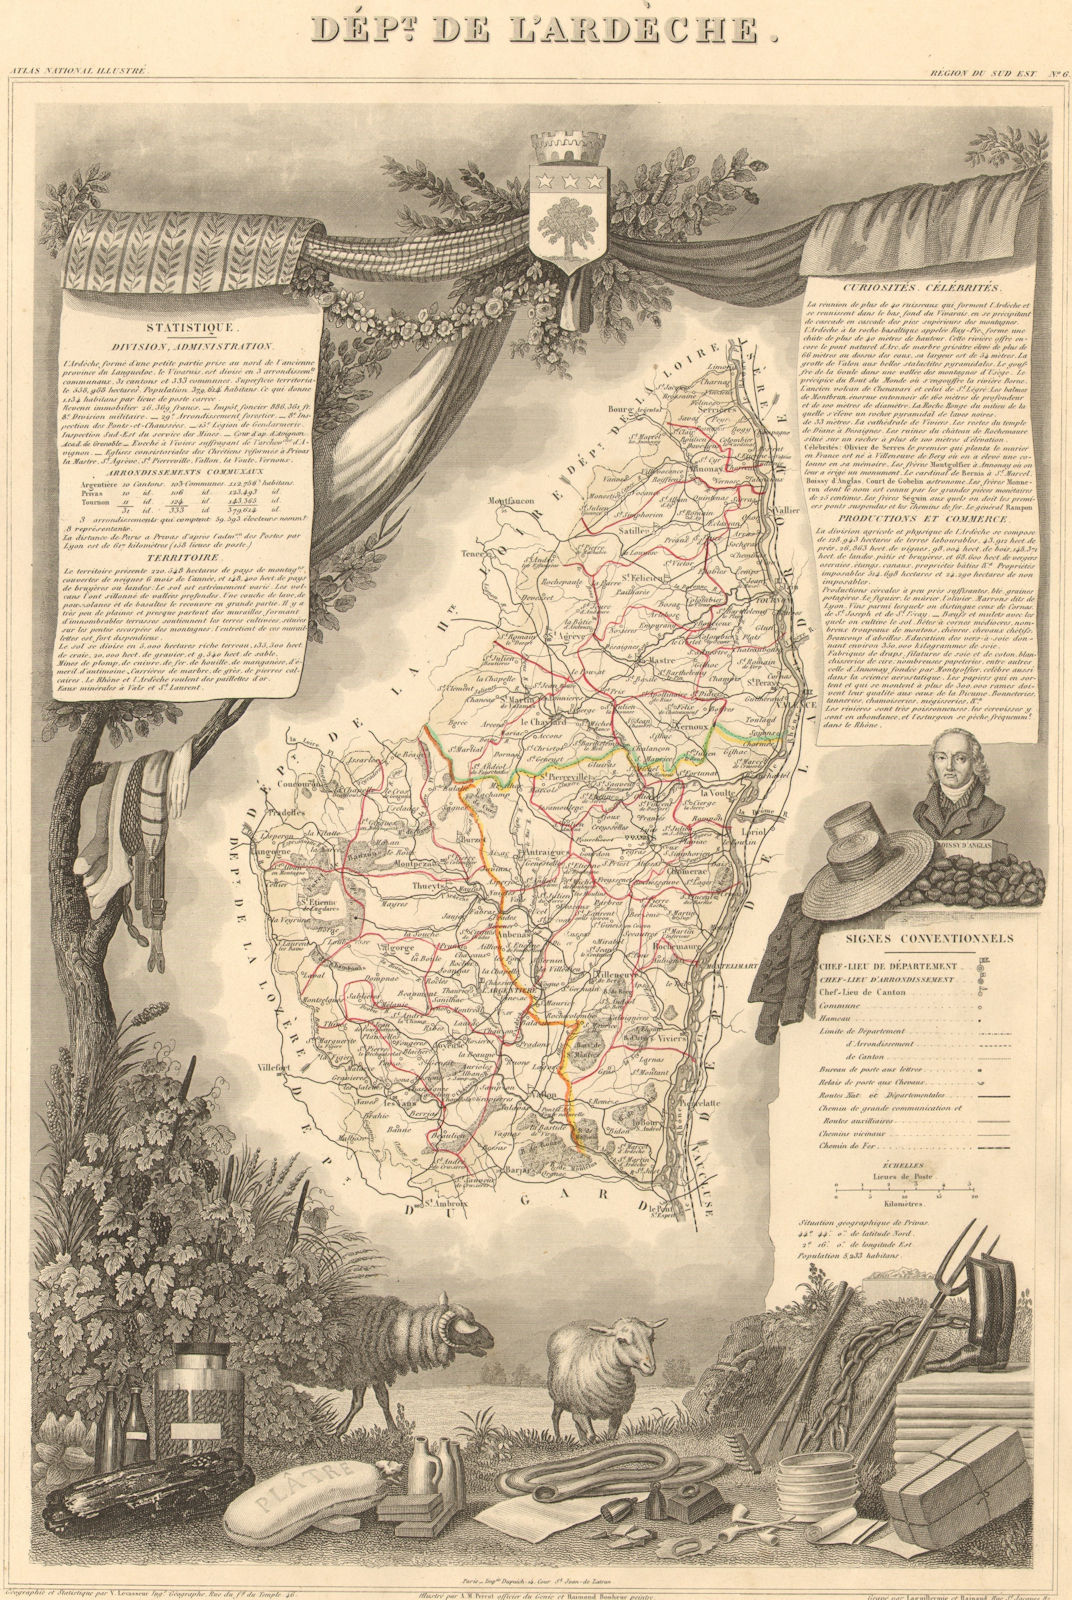 Département de l'ARDÈCHE. Decorative antique map/carte by Victor LEVASSEUR 1852